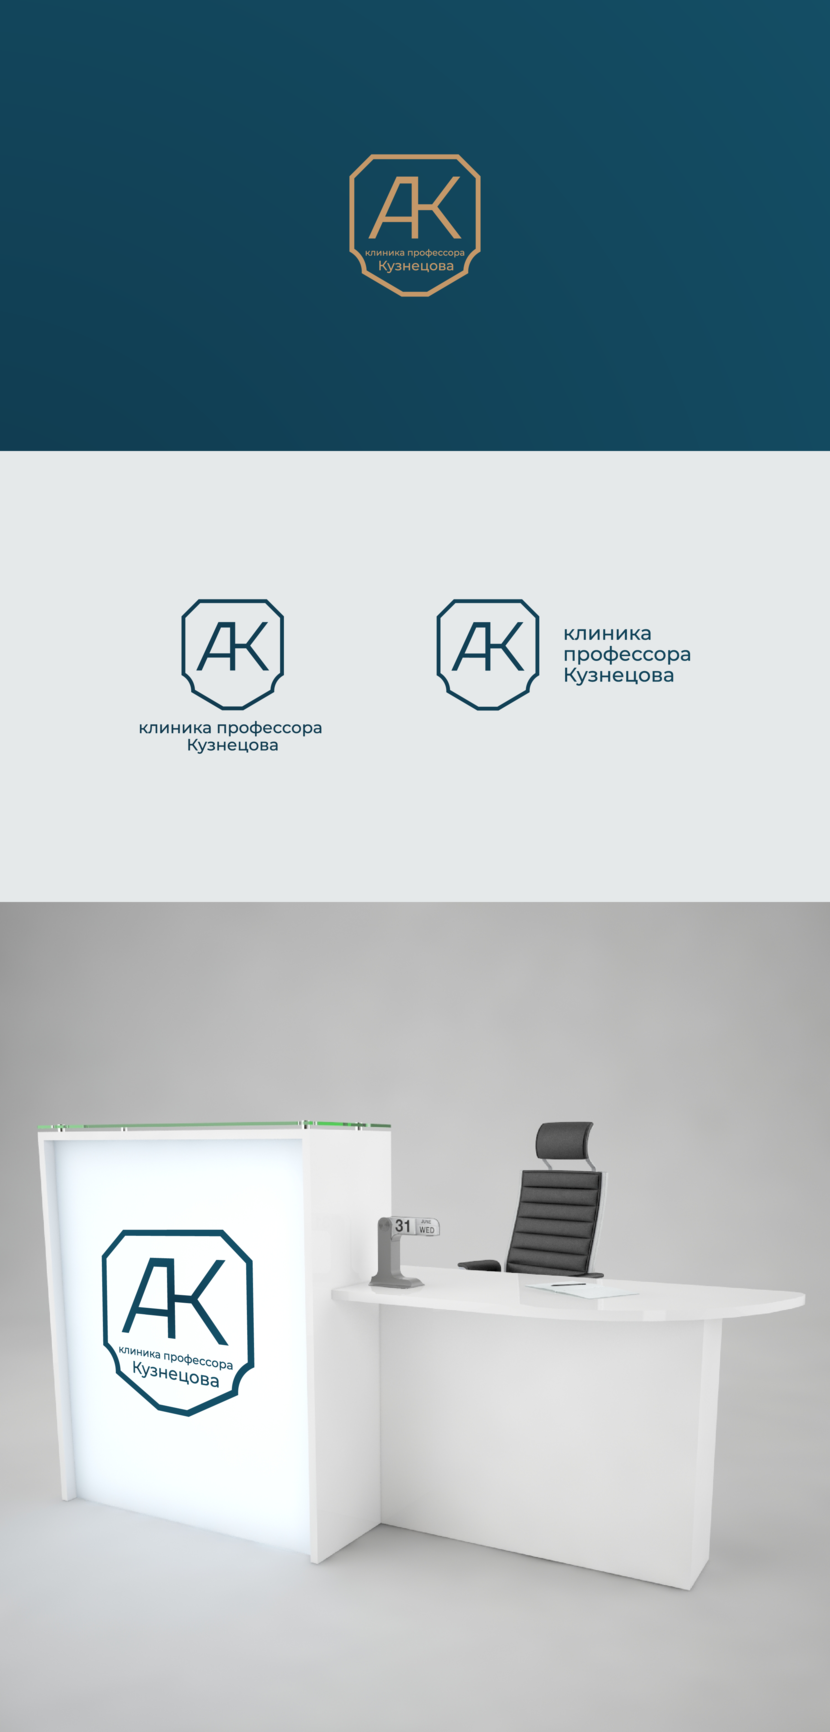 Концепция логотипа - Разработка логотипа и фирменного стиля для новой авторской стоматологии "Клиника профессора Кузнецова"